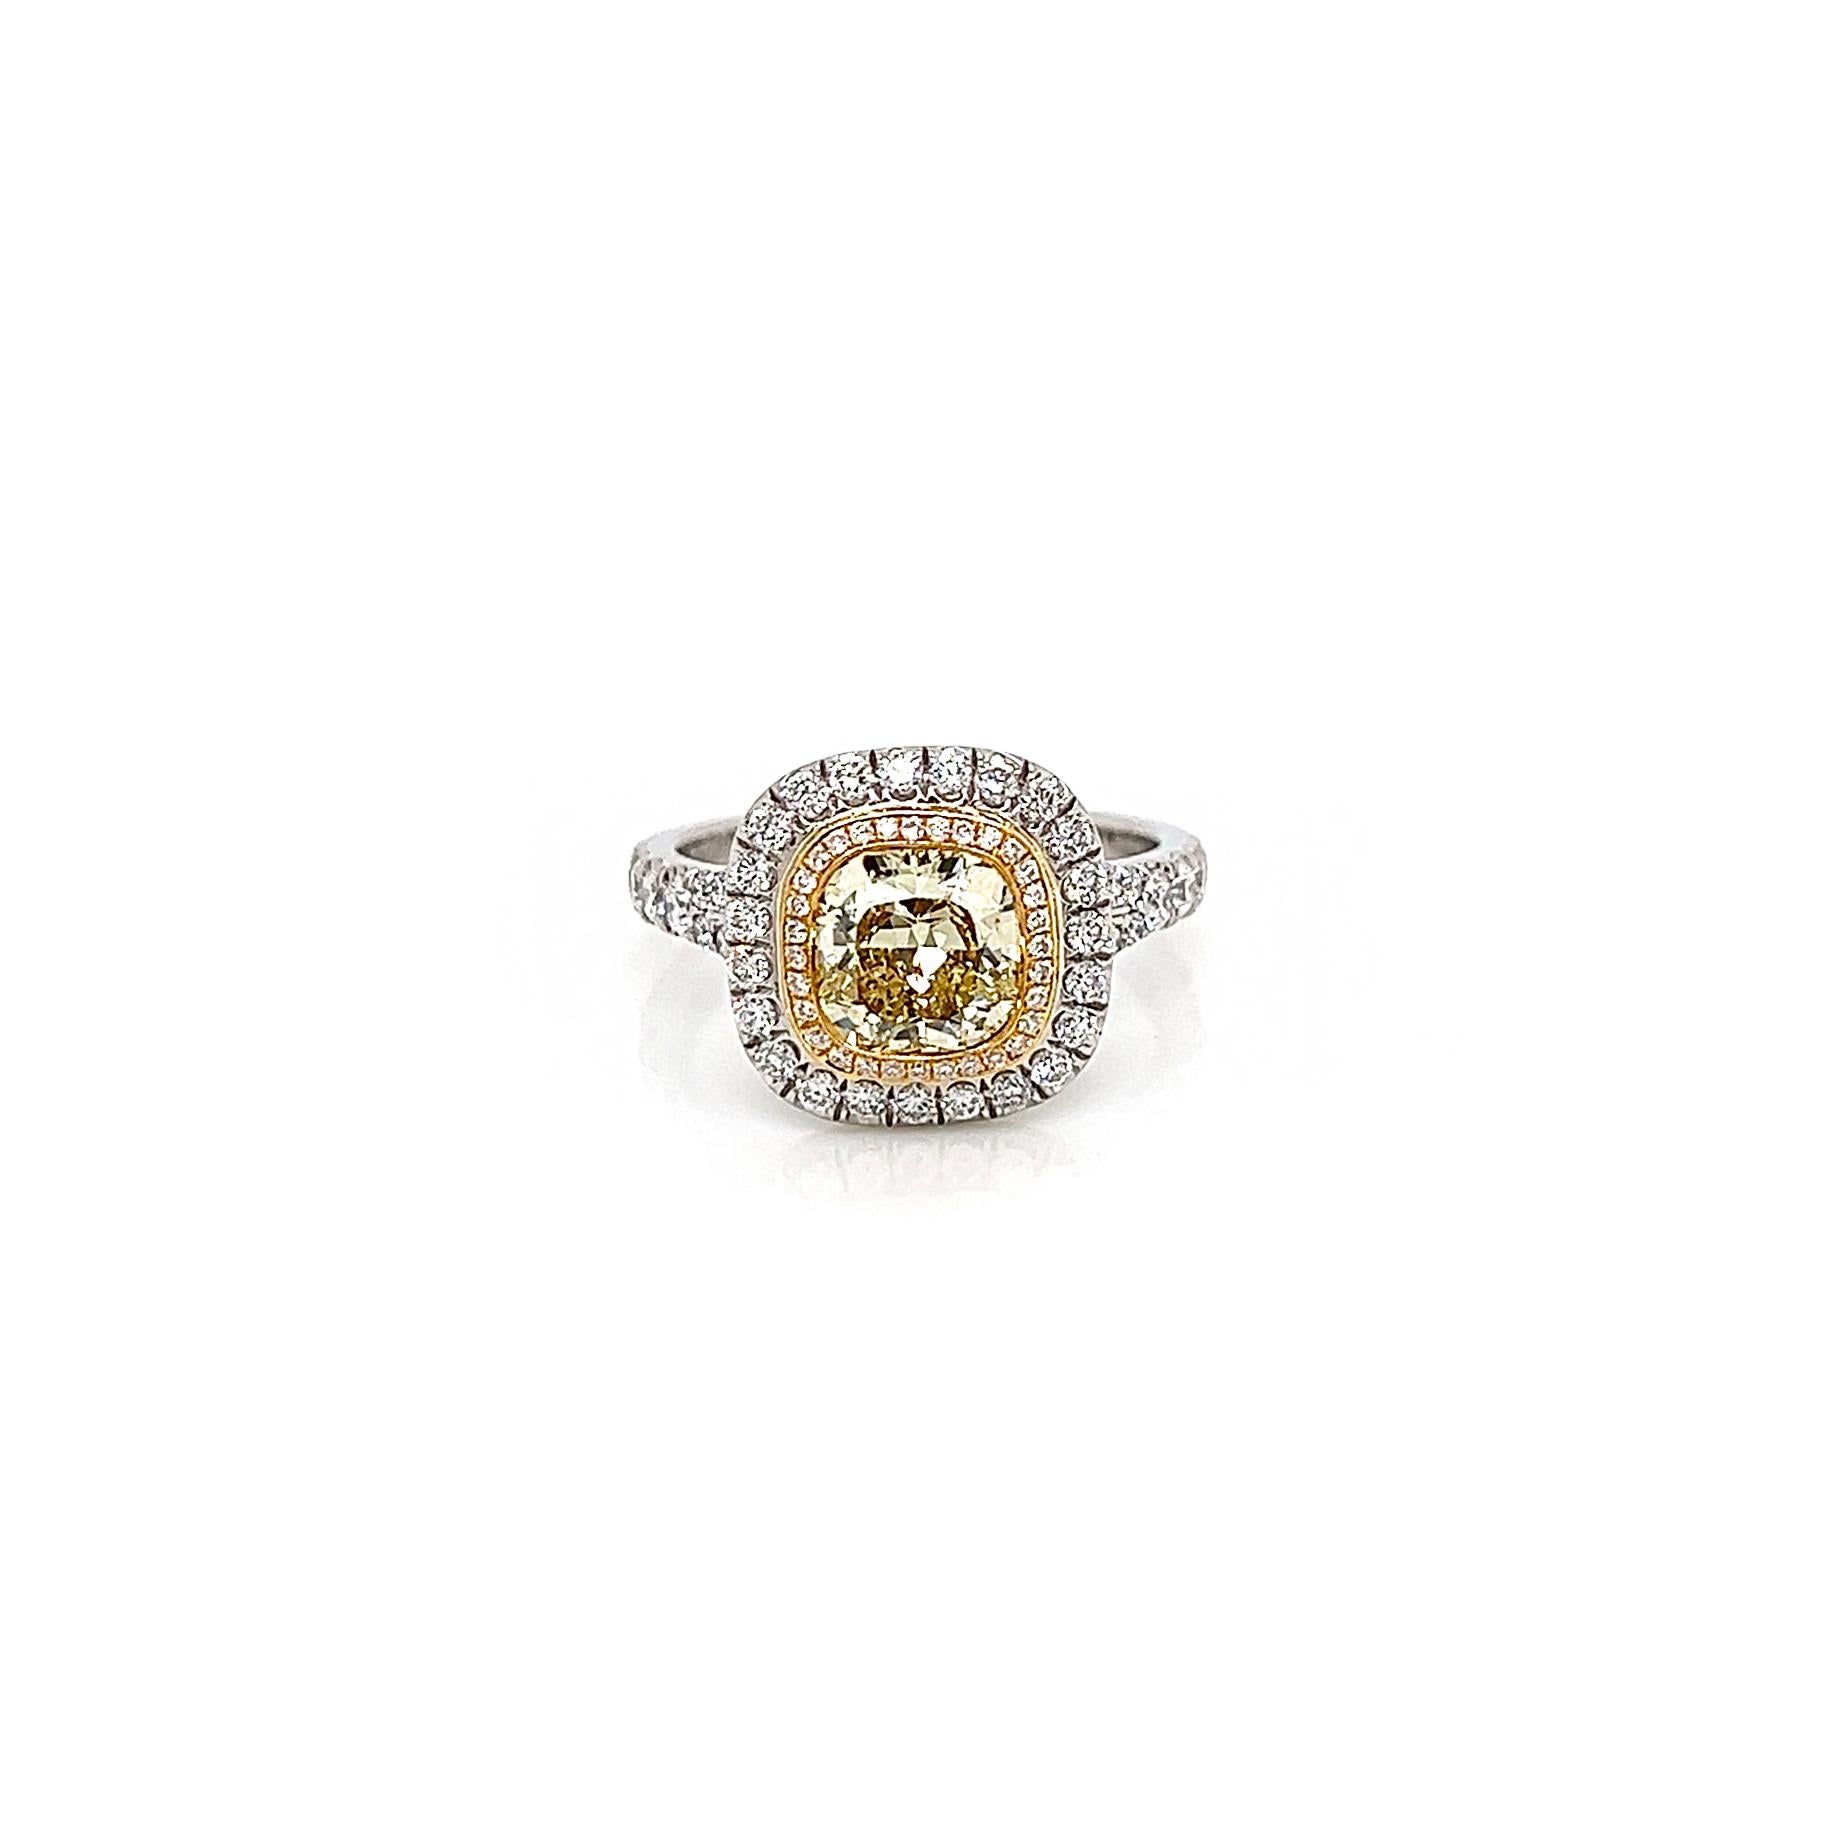 2.22 Gesamtkarat Fancy Yellow Diamond Double Halo Pave-Set Damen Verlobungsring, GIA zertifiziert

Der doppelte Halo-Diamant-Verlobungsring ist mehr als besonders, er ist einzigartig; und mit dem einzigartigen Mittelstein 